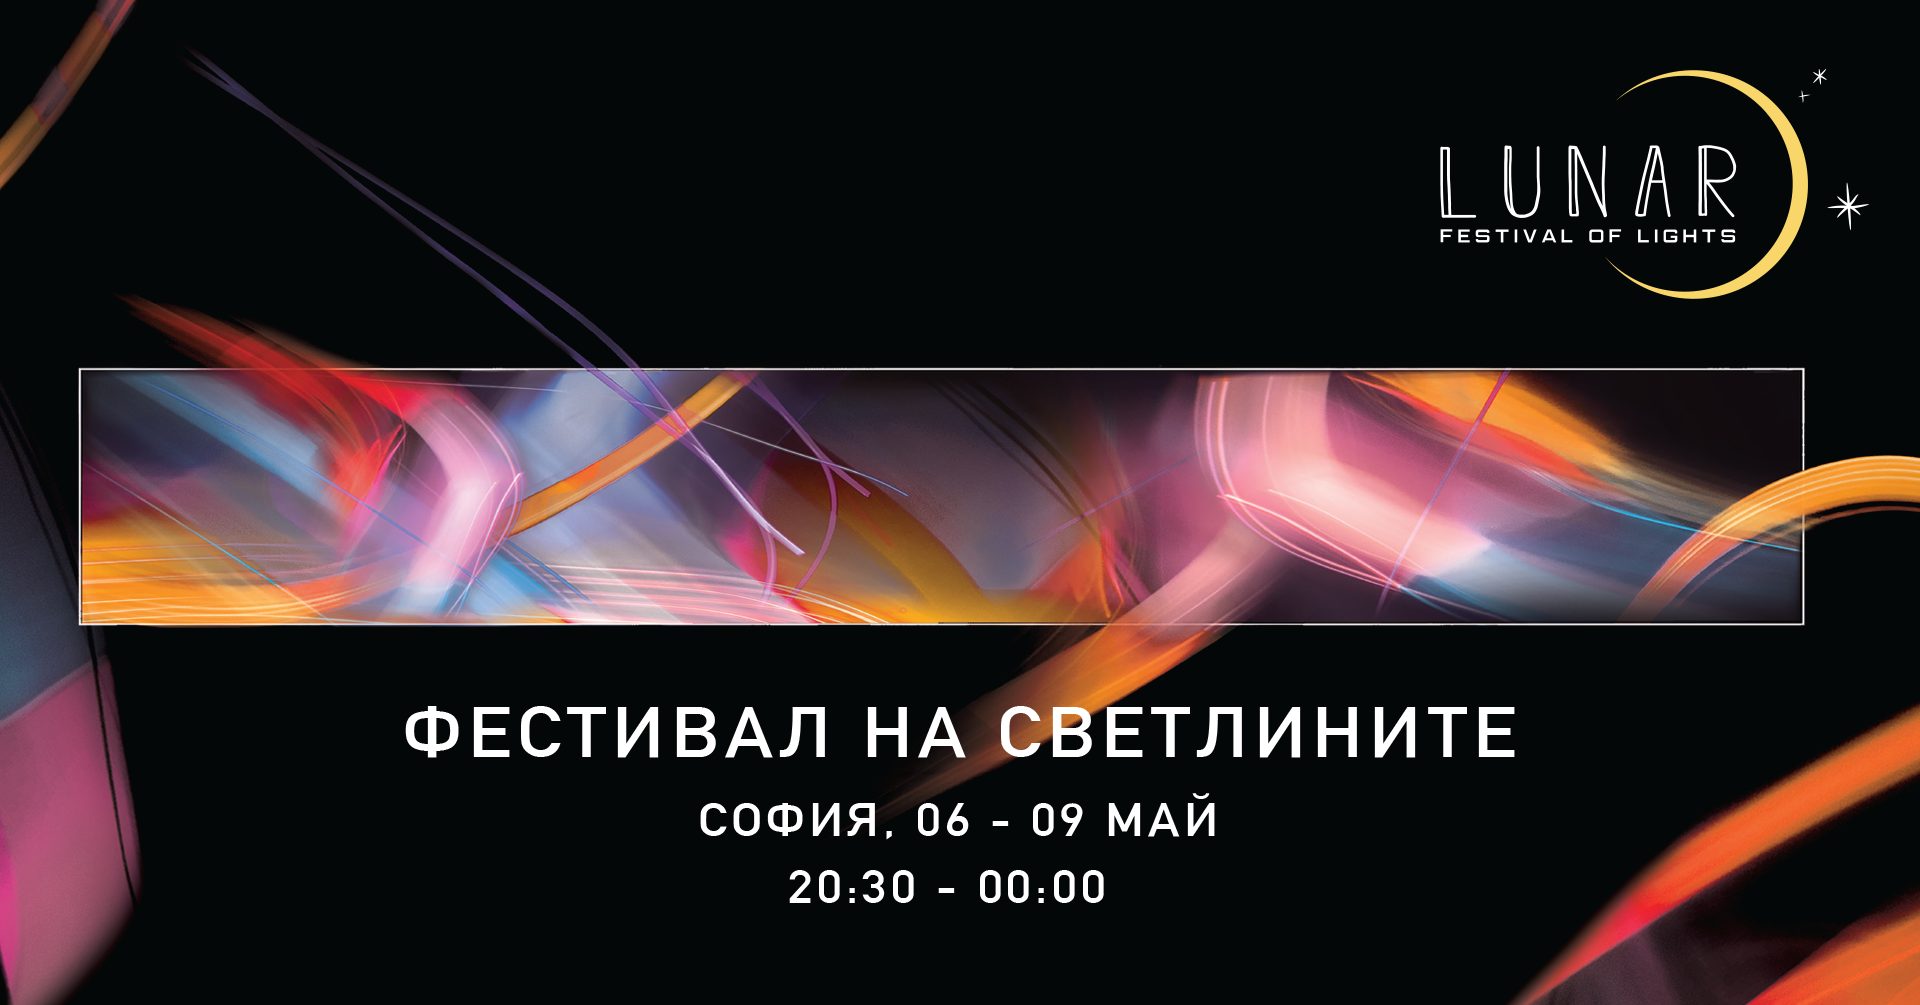 Първият Фестивал на светлините LUNAR превръща София в огромна галерия под открито небе (6 - 9 май 2022)